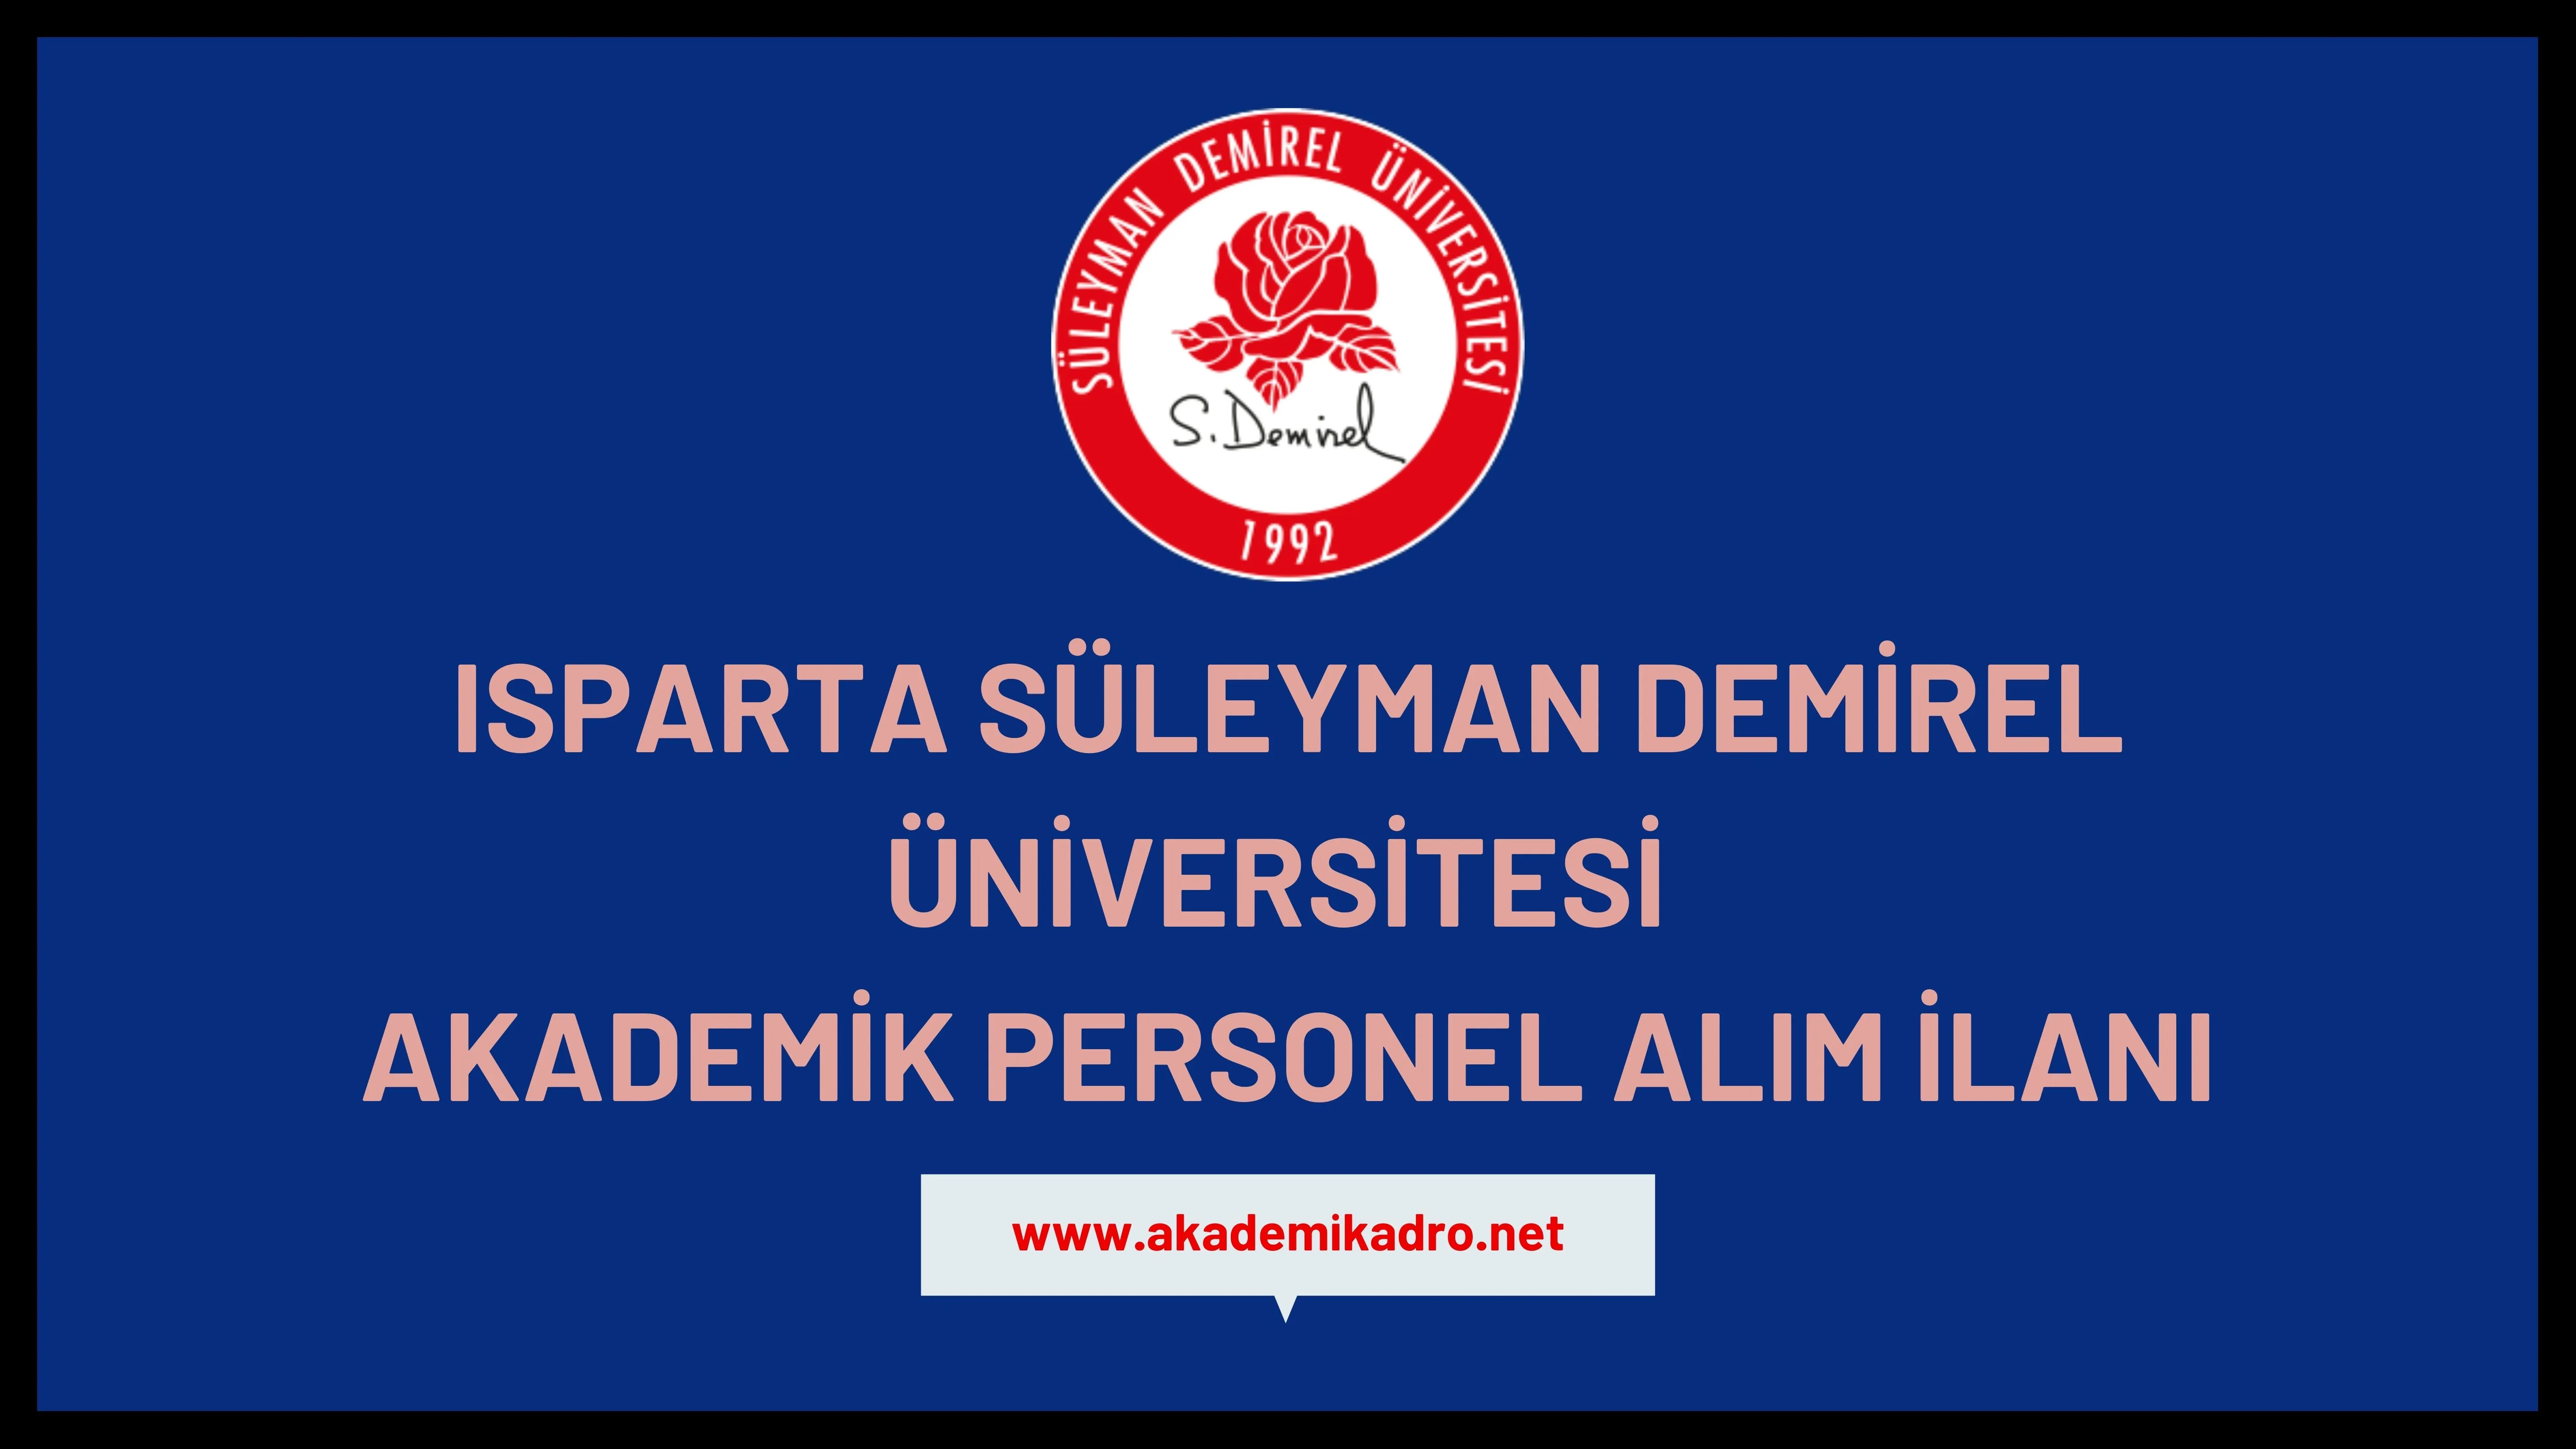 Süleyman Demirel Üniversitesi çeşitli branşlarda 12 akademik personel alacak.